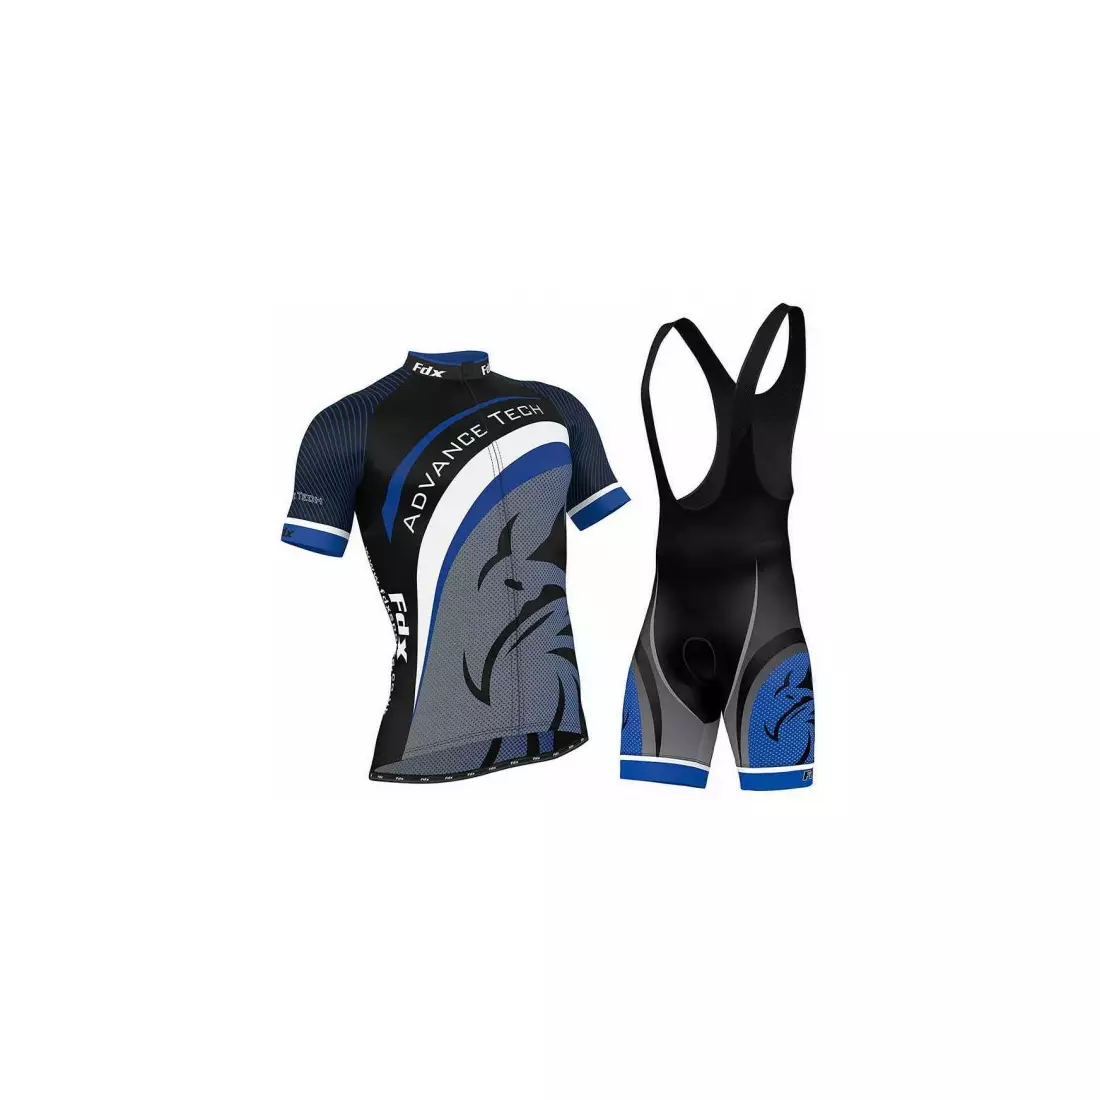 FDX 1060 cycling set: cycling jersey + bib shorts with insert, blue